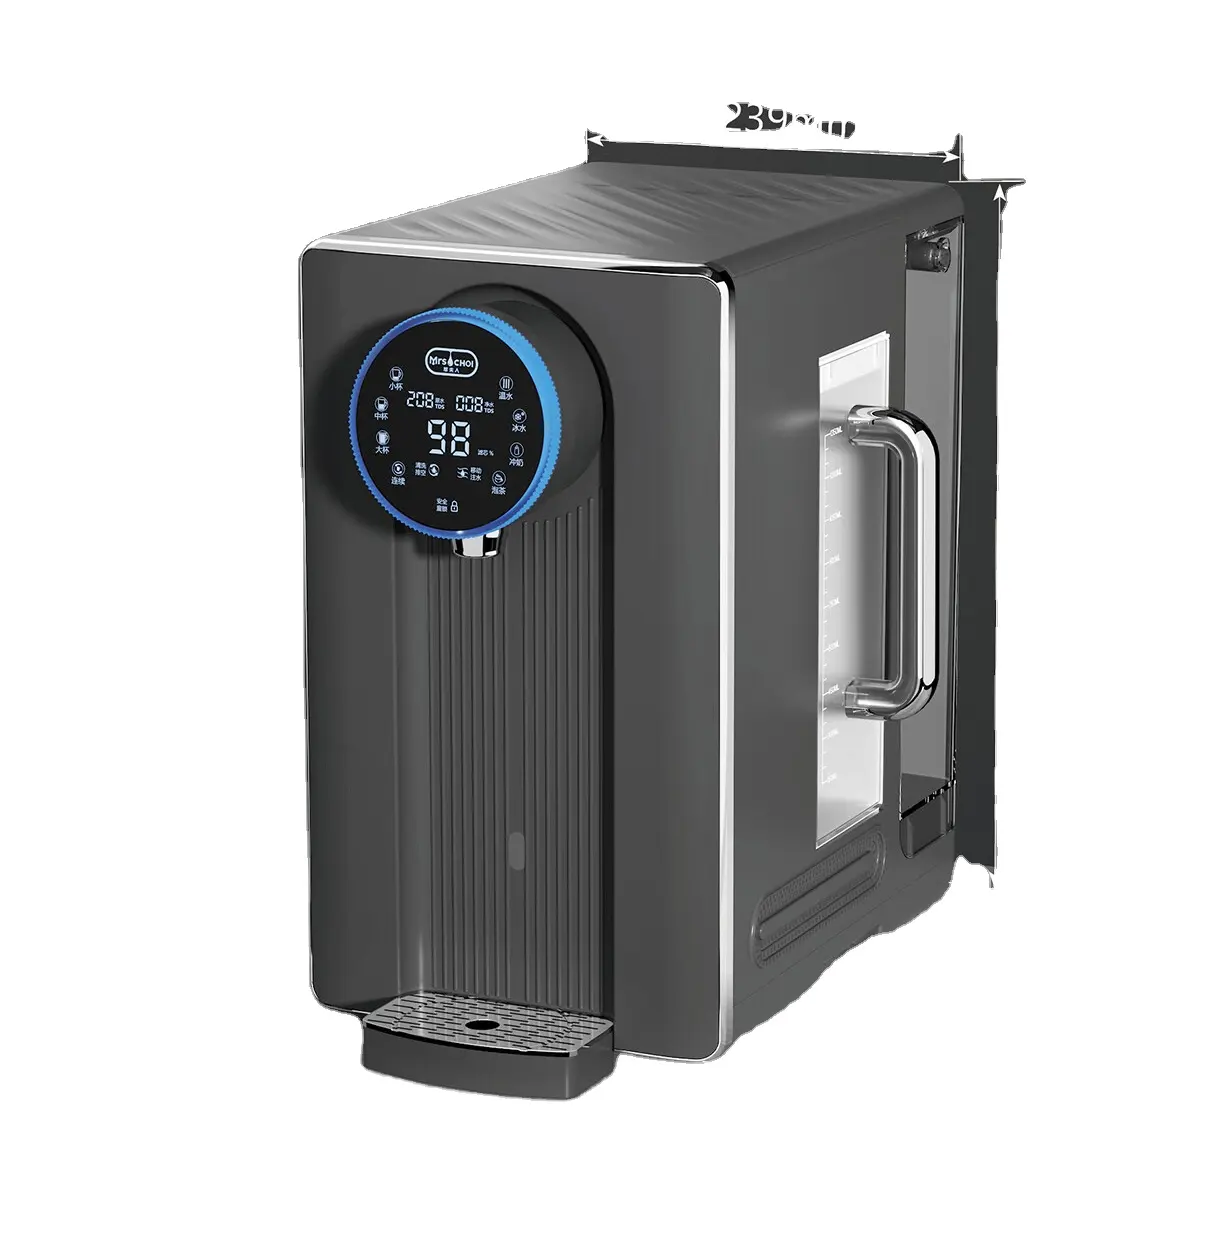 Dispensador de água quente e fria para eletrodomésticos, filtro de água ou purificador de bancada, dispensador de água RO sustentável